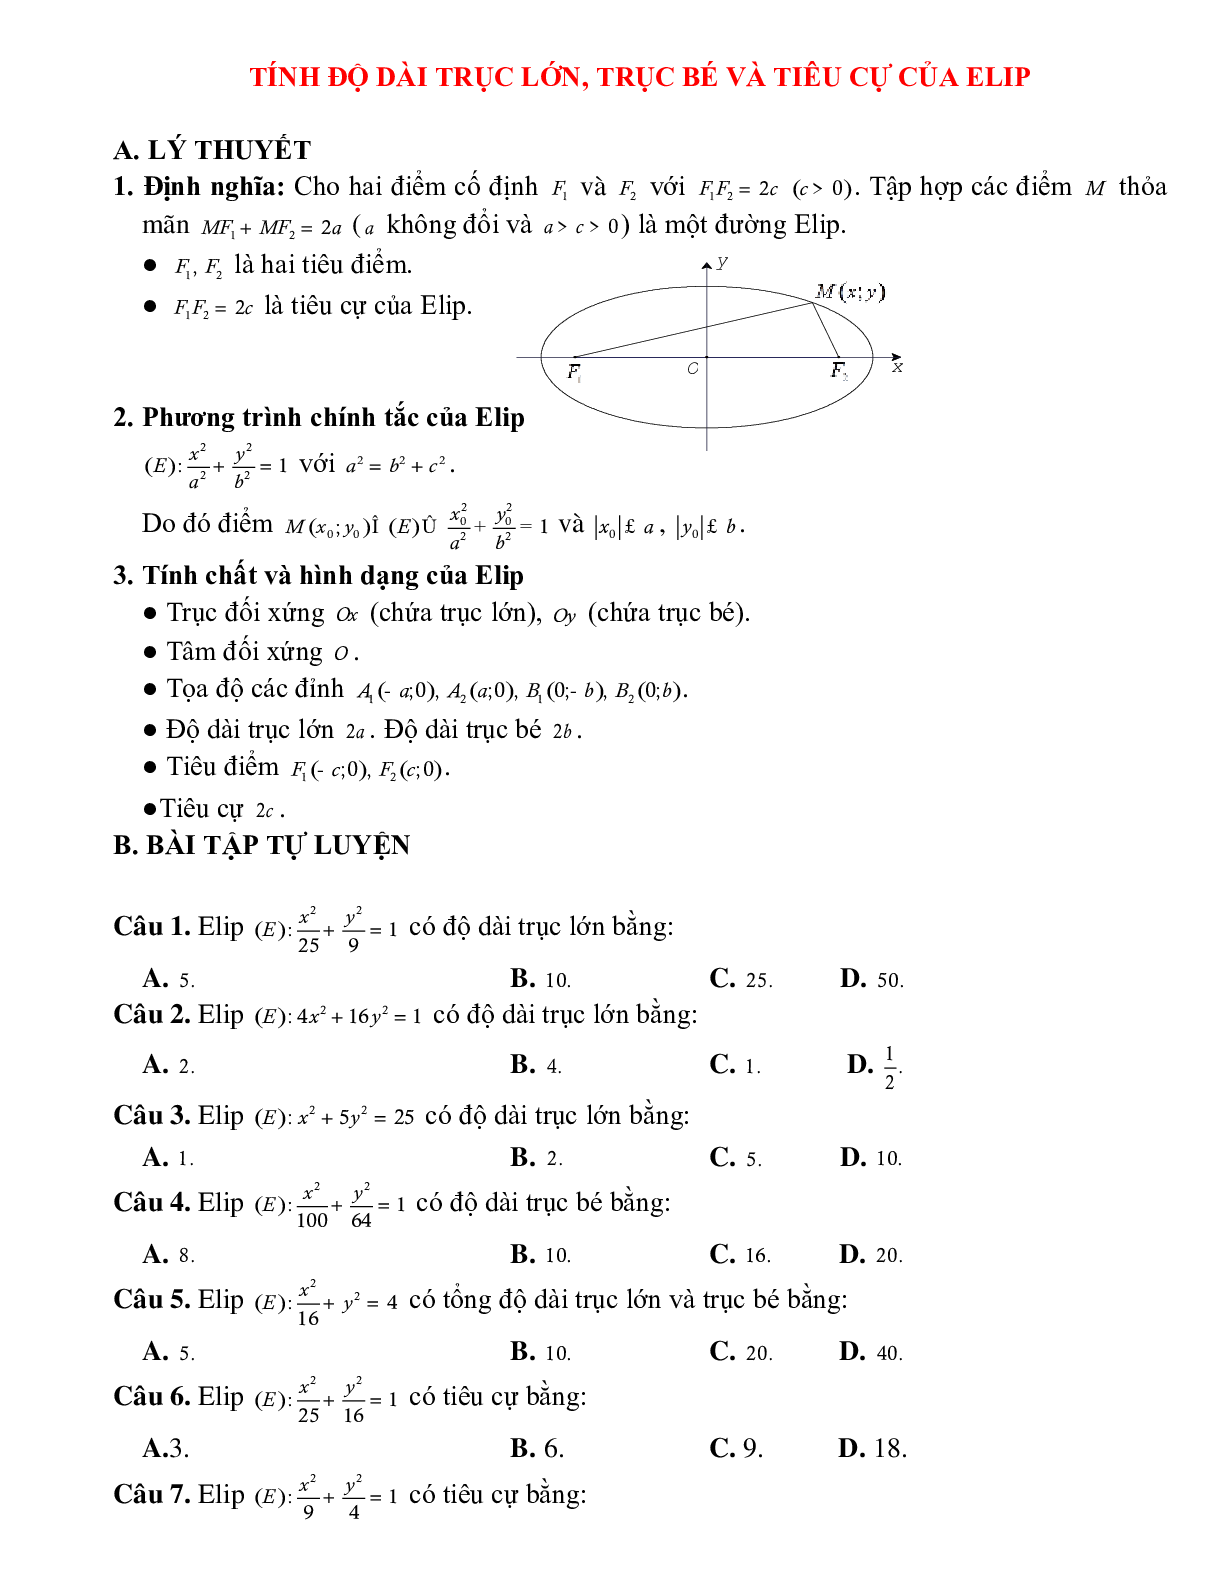 Lý thuyết, bài tập về Tính độ dài trục lớn, trục bé và tiêu cự của elip chọn lọc (trang 1)